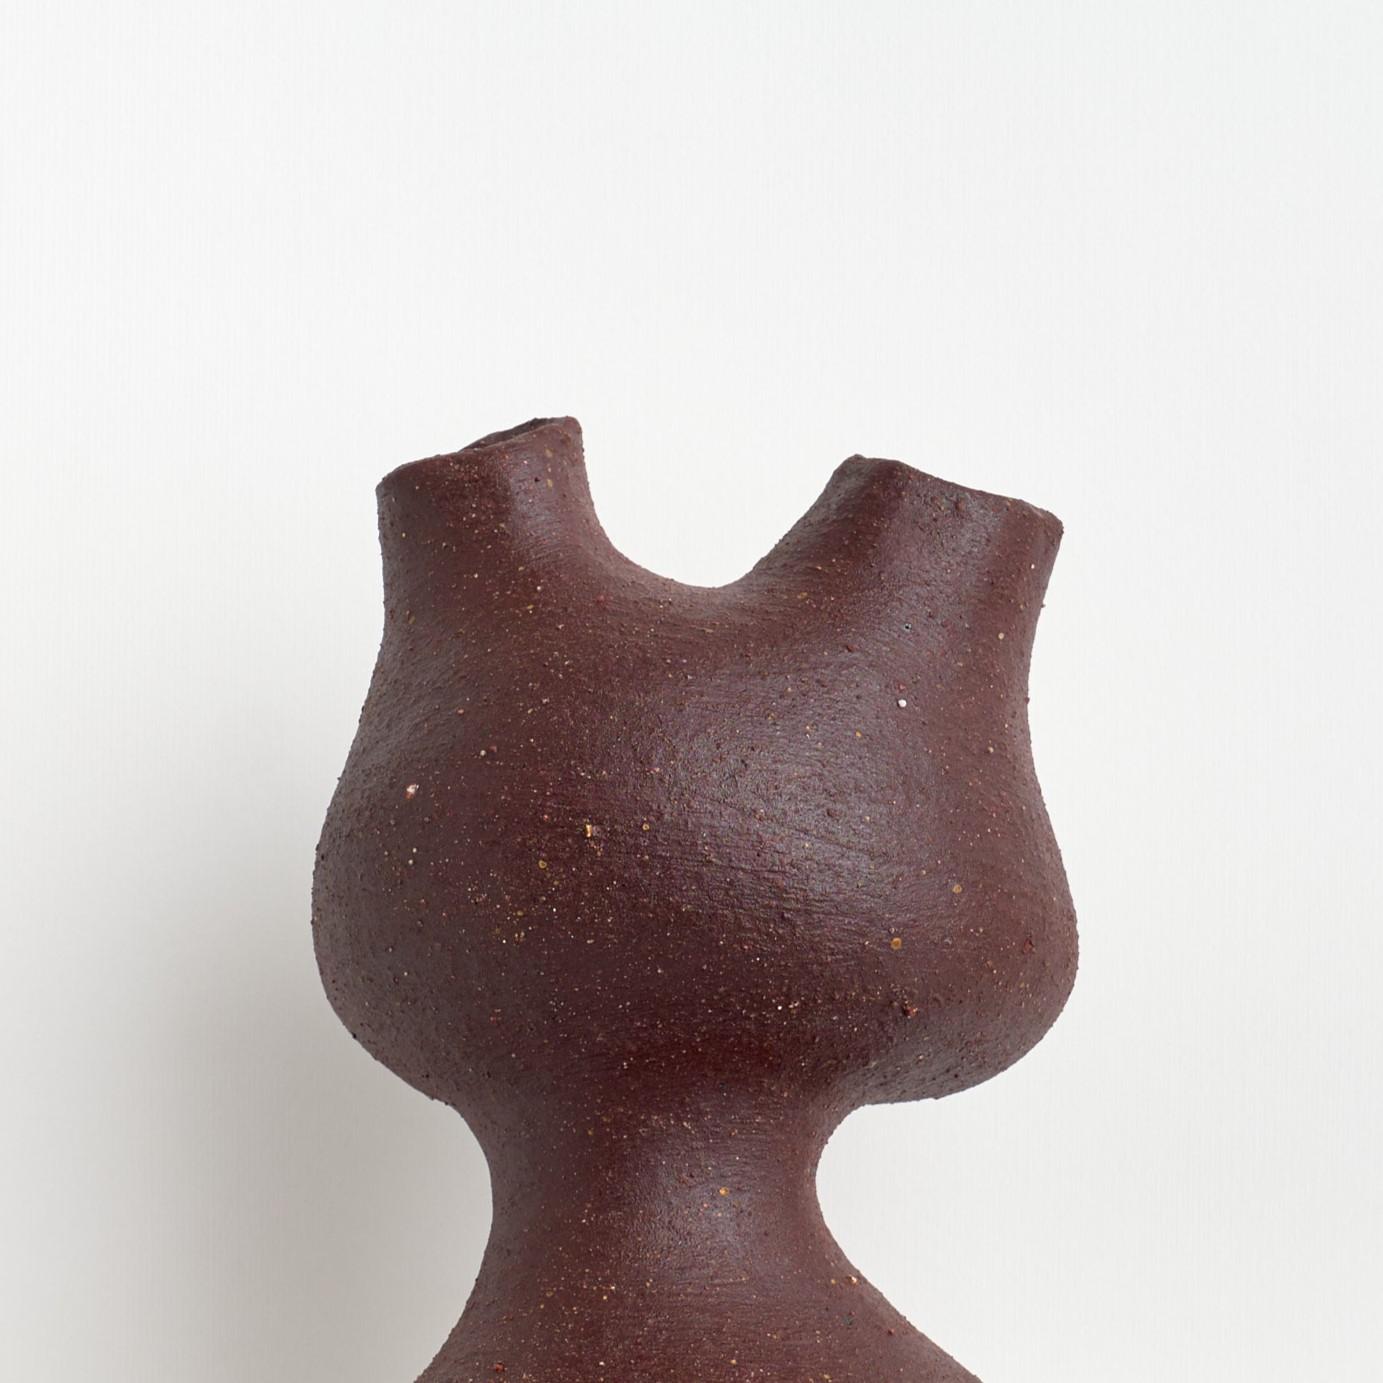 Vase Complemento de Camila Apaez
Unique en son genre
Matériaux : Grès cérame
Dimensions : ⌀ 17 x H 27 cm


Ila Ceramica est née d'un processus de recherche intérieure où la céramique est devenue un espace de présence, de silence, de toucher et de